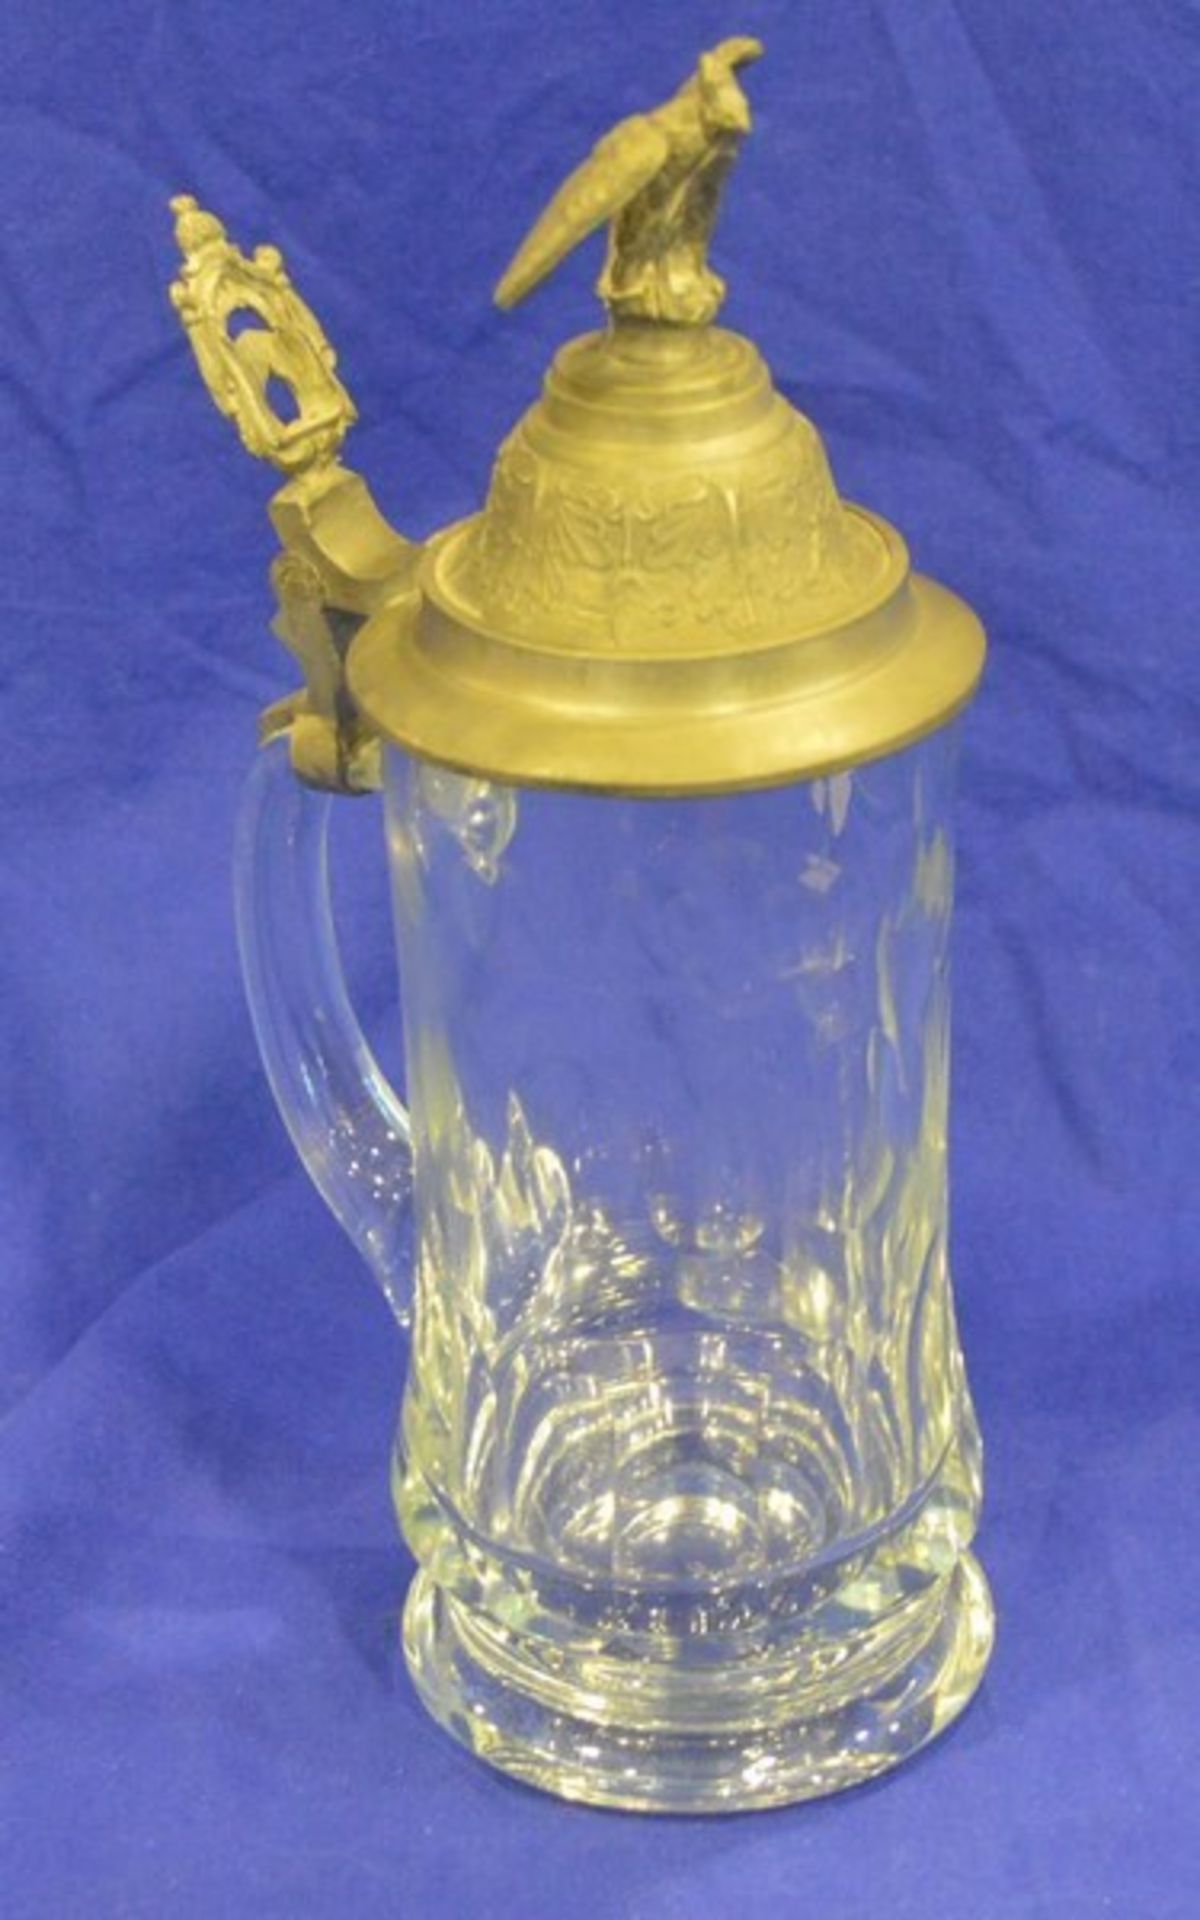 Bierkrug farbl. Glas, geschliffen, Zinndeckel mit Adlerbekrönung, H 28 cm